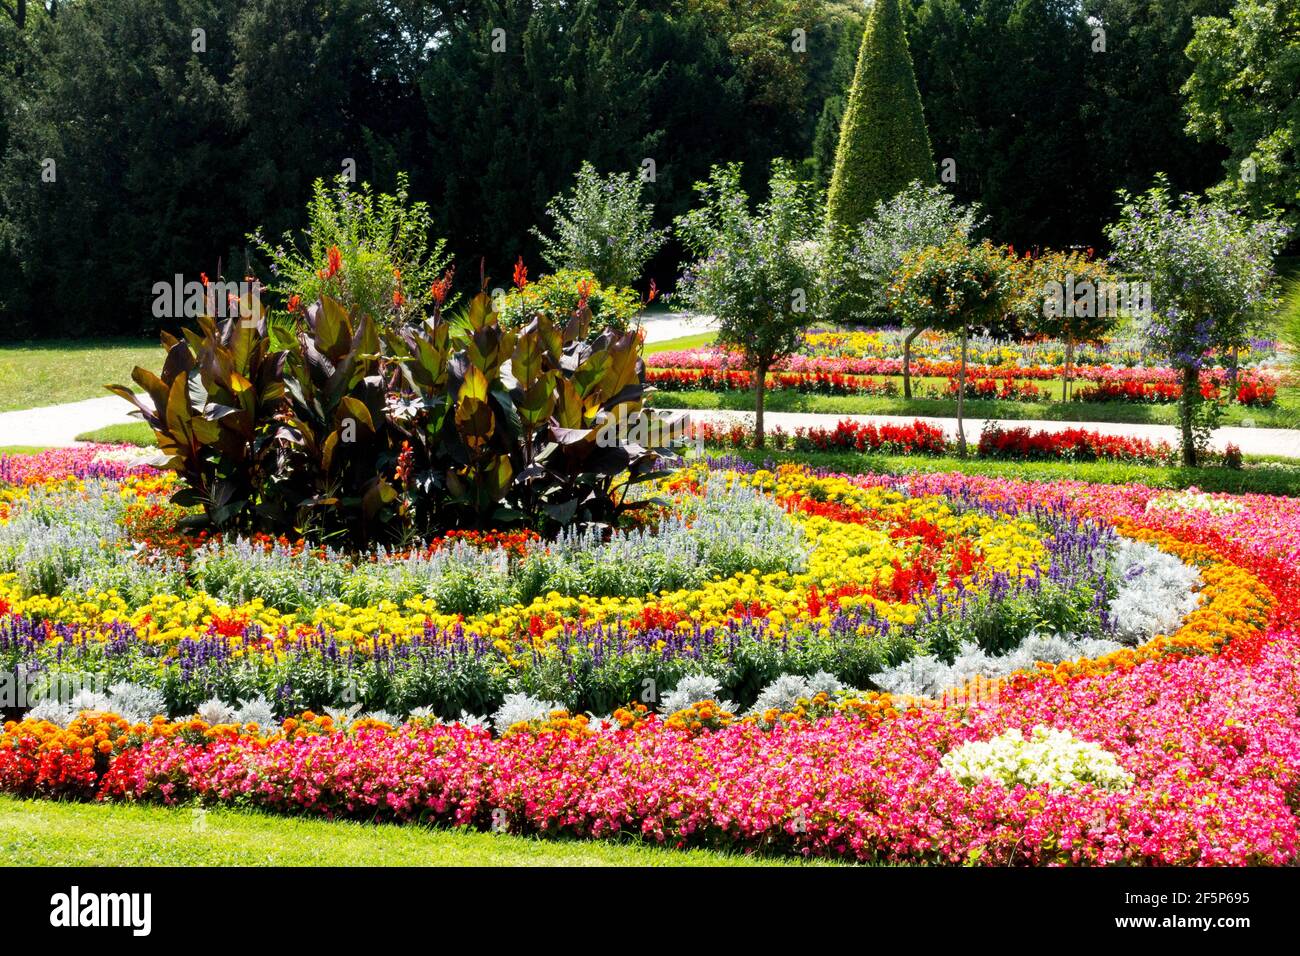 Parterres de fleurs disposés dans un cercle coloré, plantes annuelles de jardin parterres de fleurs Banque D'Images